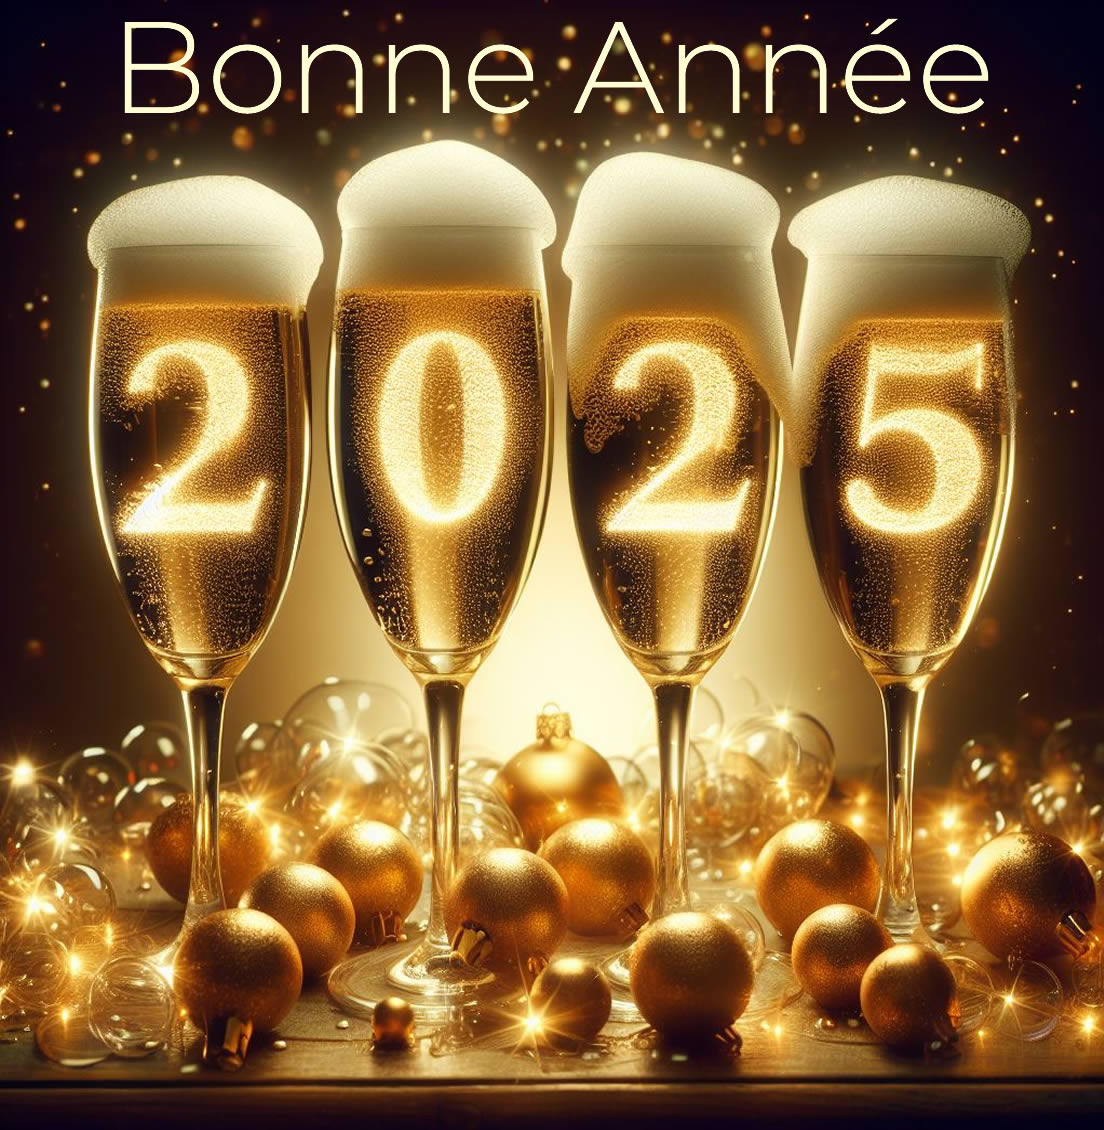 Image 2025 avec quatre flûtes pleines de champagne